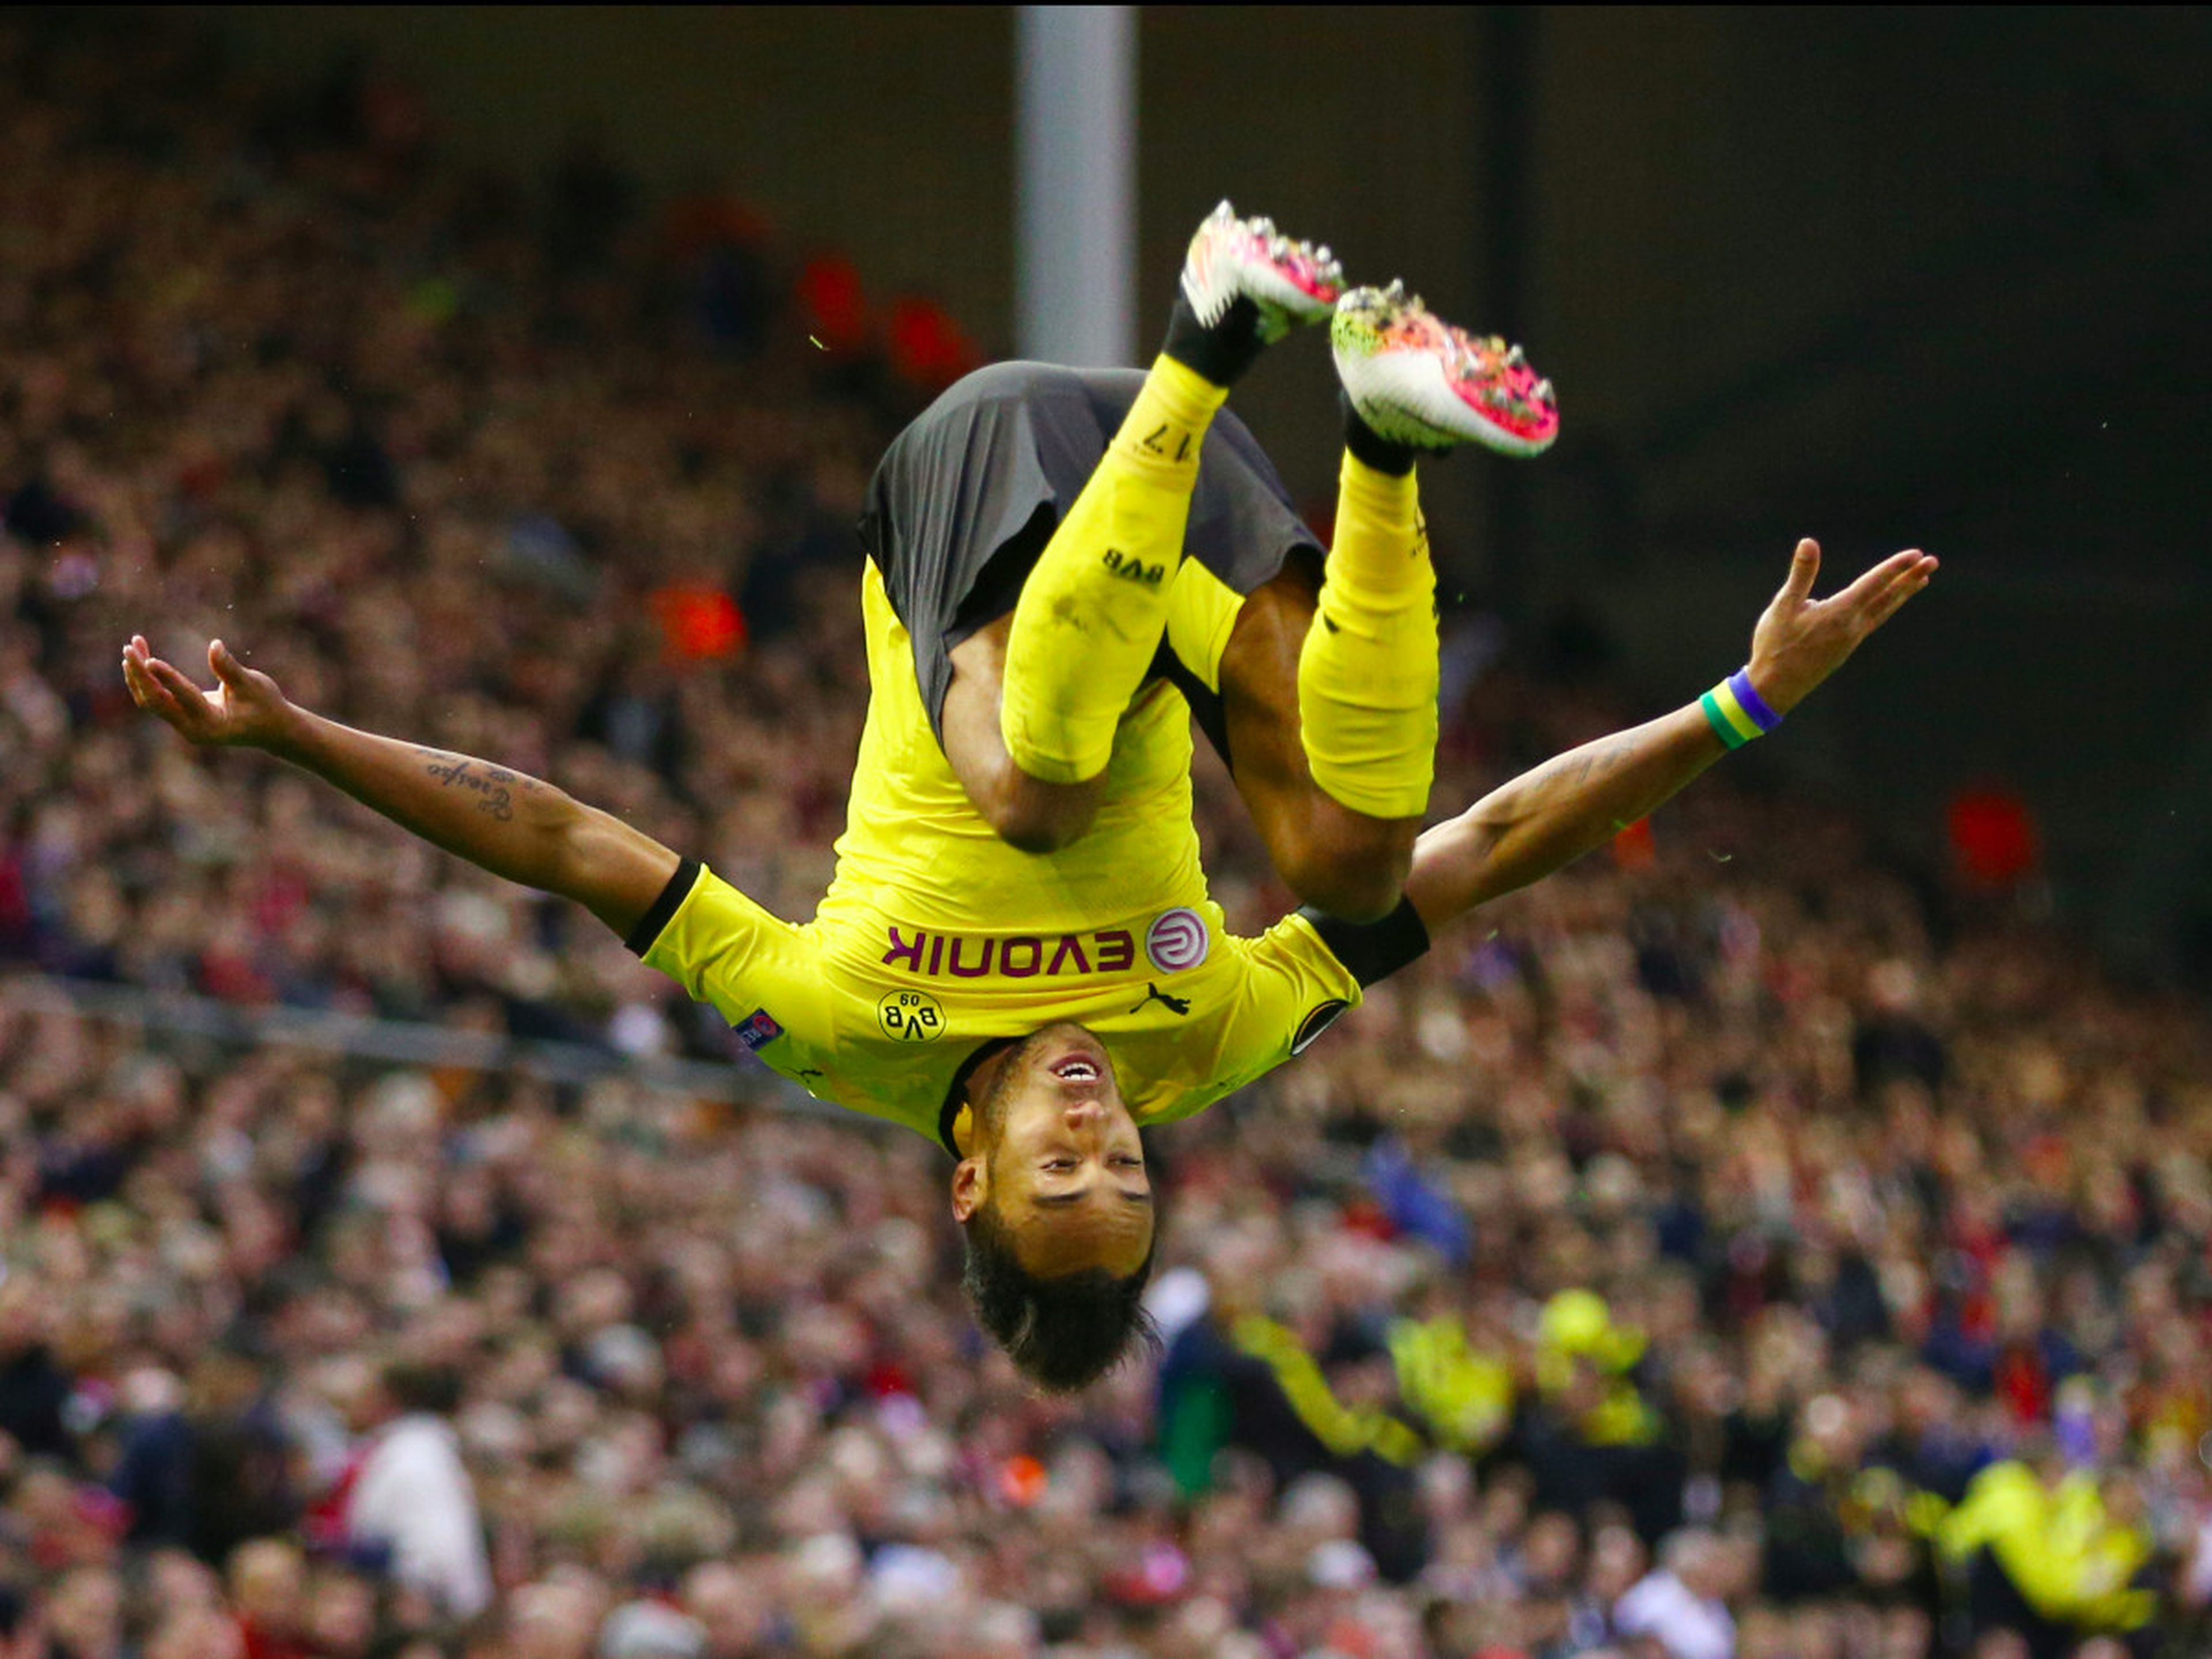 El jugador de fútbol Aubameyang, del Borussia Dortmund celebra un gol.